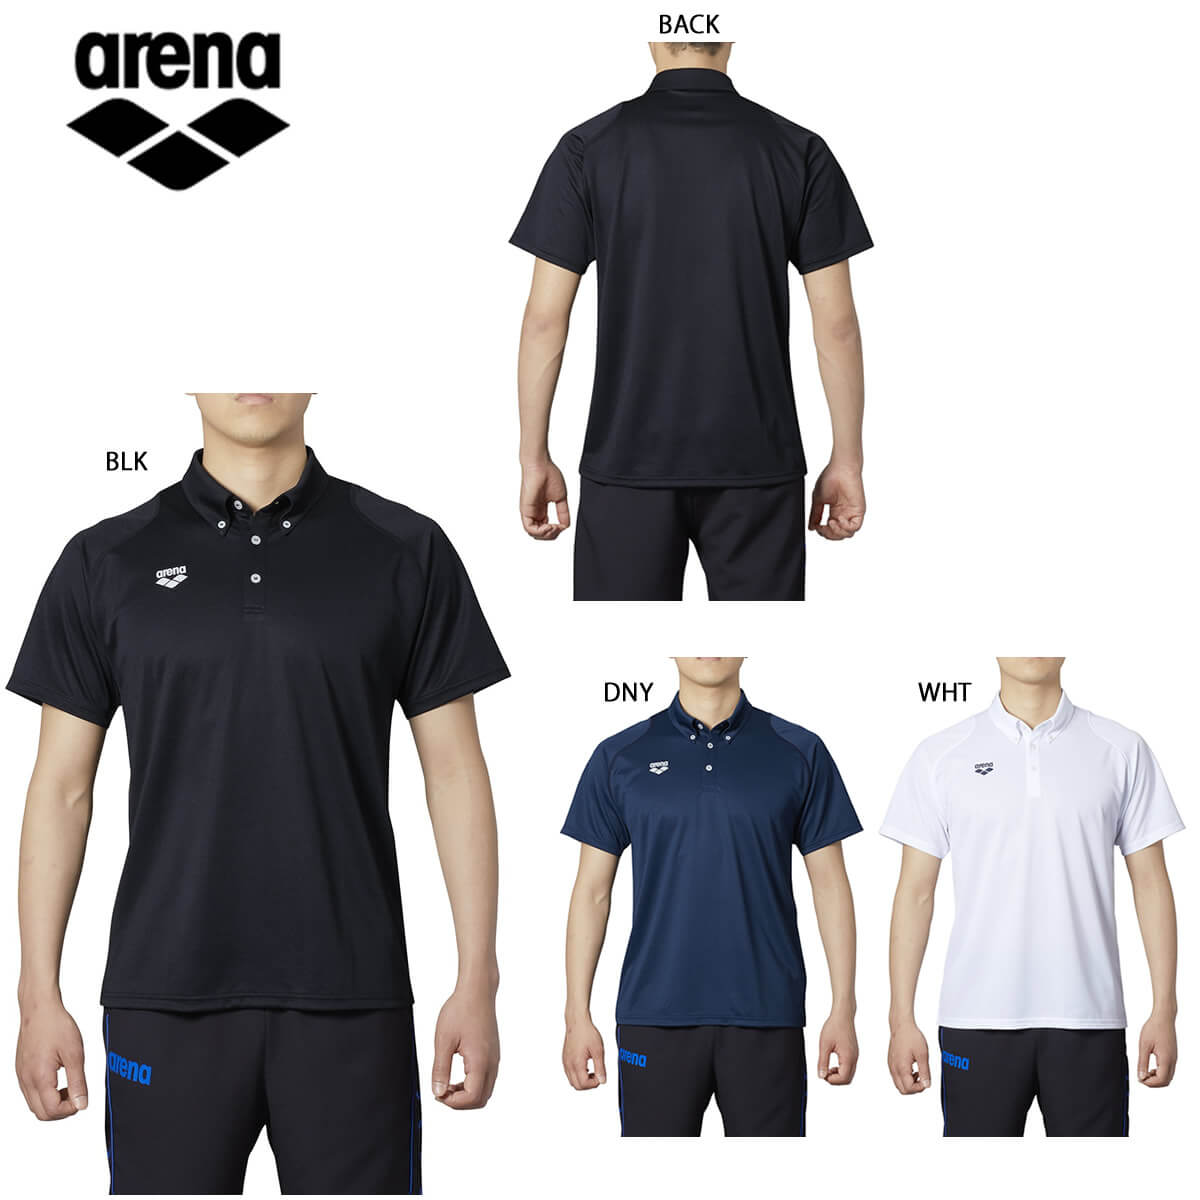 arena ARN-0334 ポロシャツ 半袖シャツ 何でも揃う 衿付き メンズ アリーナ 水泳 アイテム勢ぞろい スイム 2021秋冬 2020SS